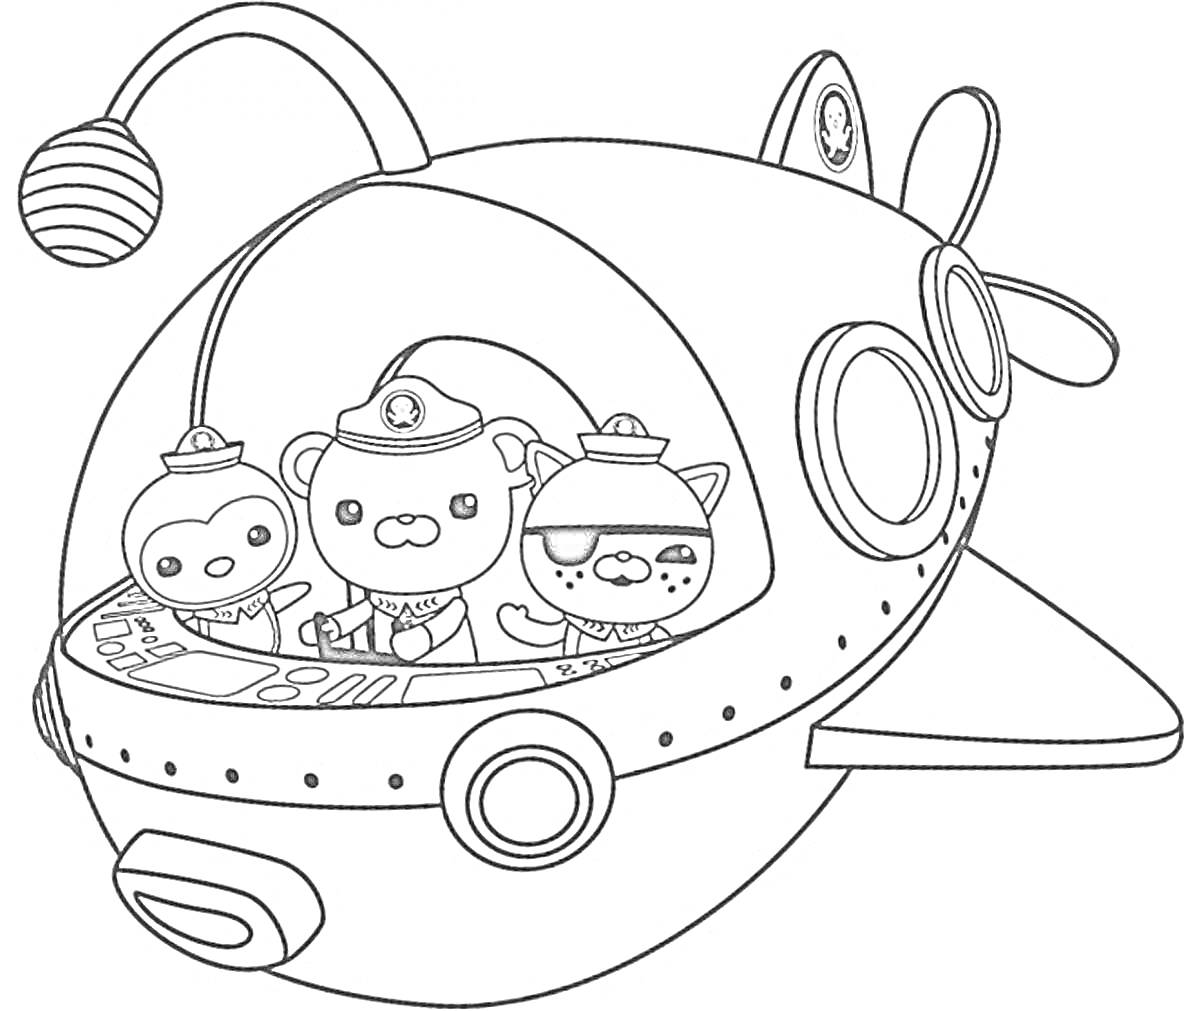 Раскраска три персонажа в подводной лодке с иллюминаторами и антенной